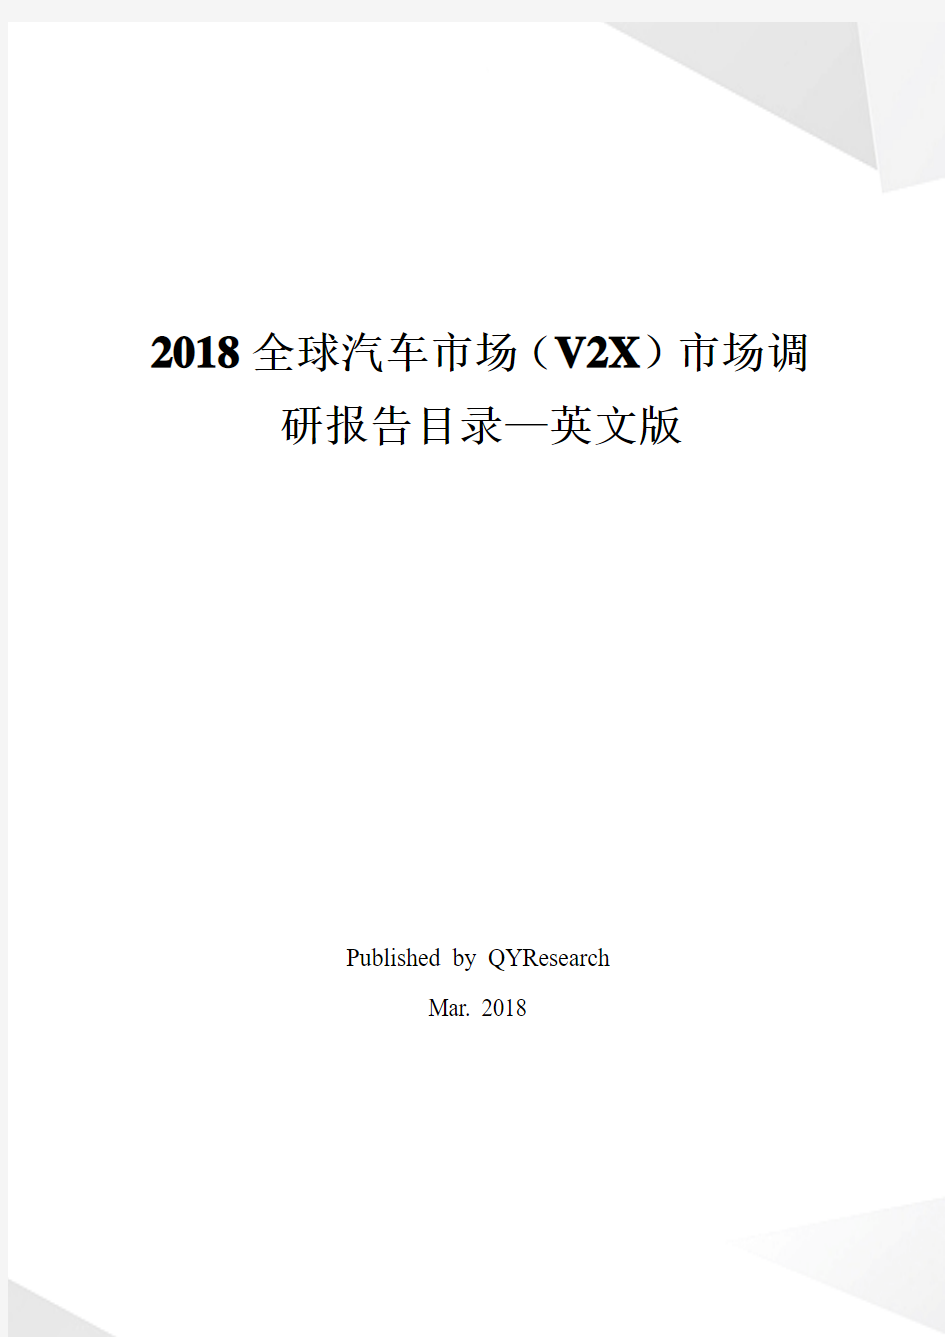 2018全球汽车市场(V2X)市场调研报告目录—英文版